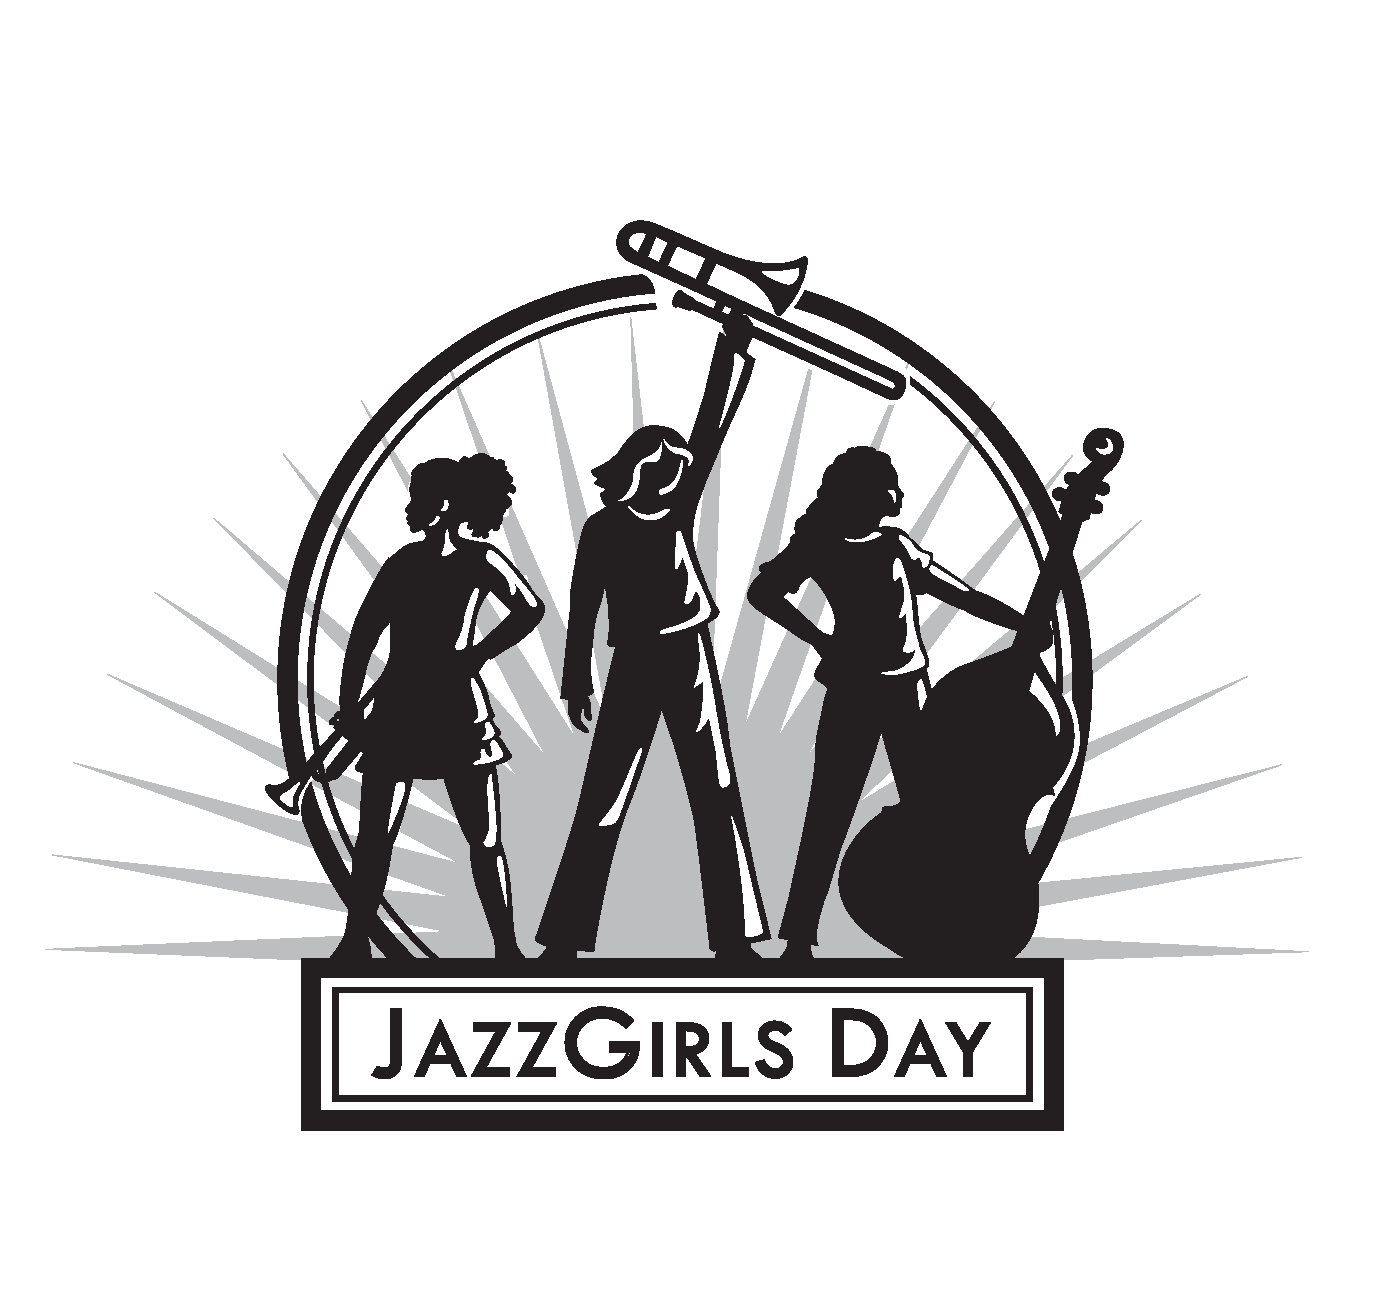 SFJAZZ Girls Day